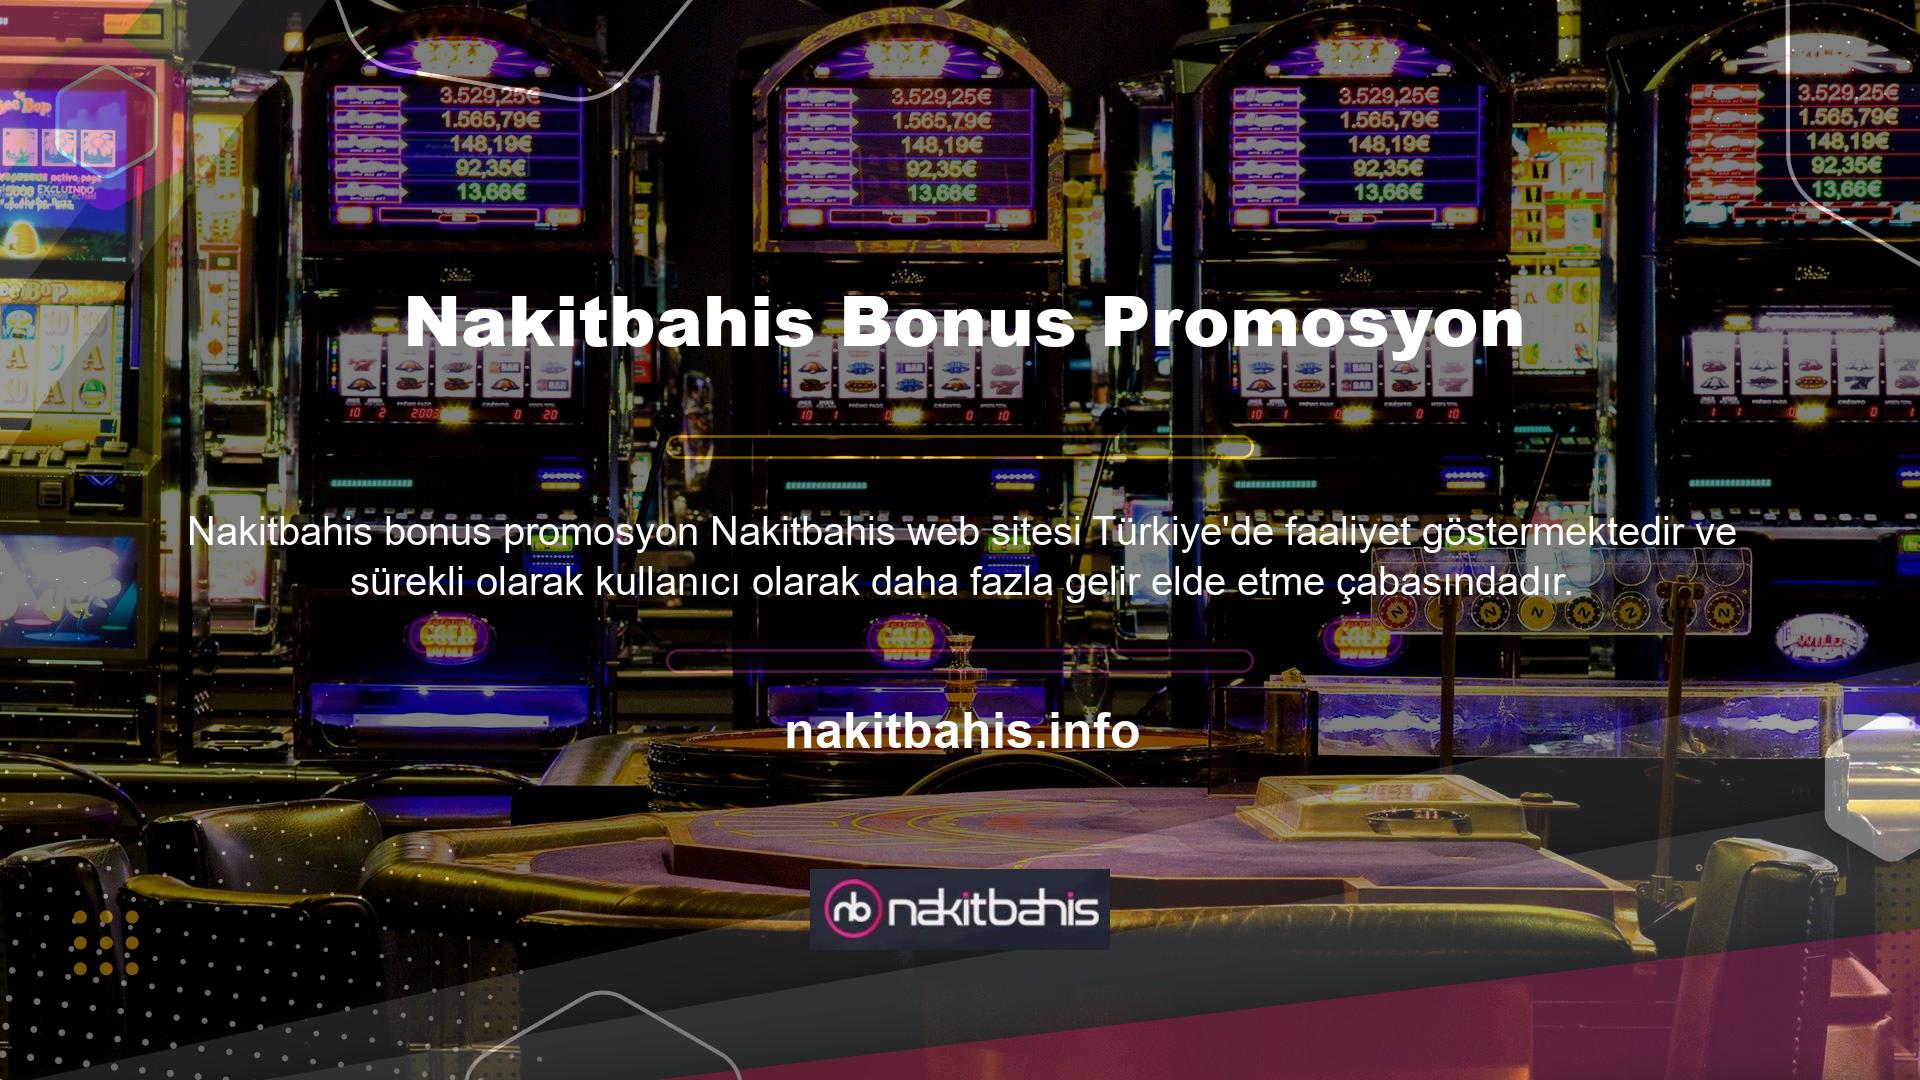 Nakitbahis web sitesi bonusları ve promosyonları, kazancınızı ikiye katlamanıza ve bahis heyecanını artırmanıza olanak tanır